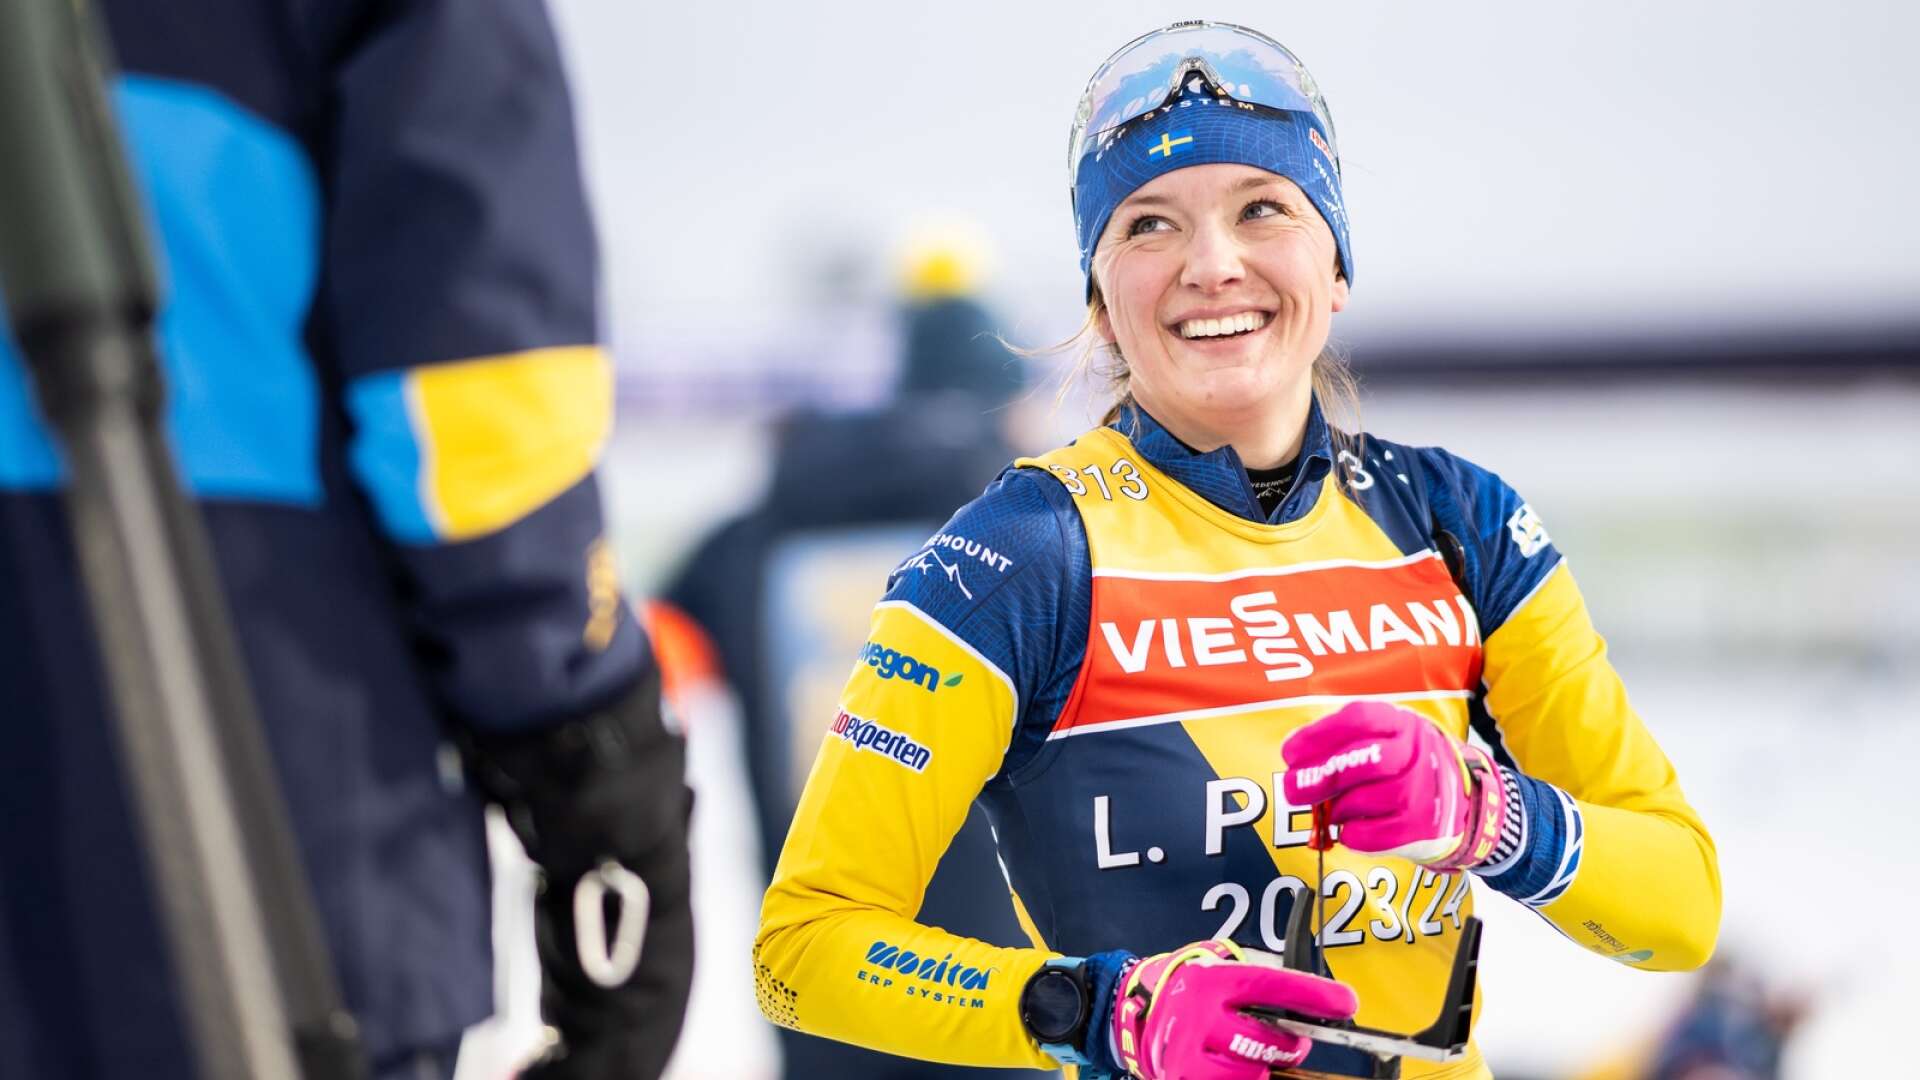 Linn Perssons distanslopp i söndags gjorde att hon får en plats i onsdagens stafett i skidskyttevärldscupen i Östersund.